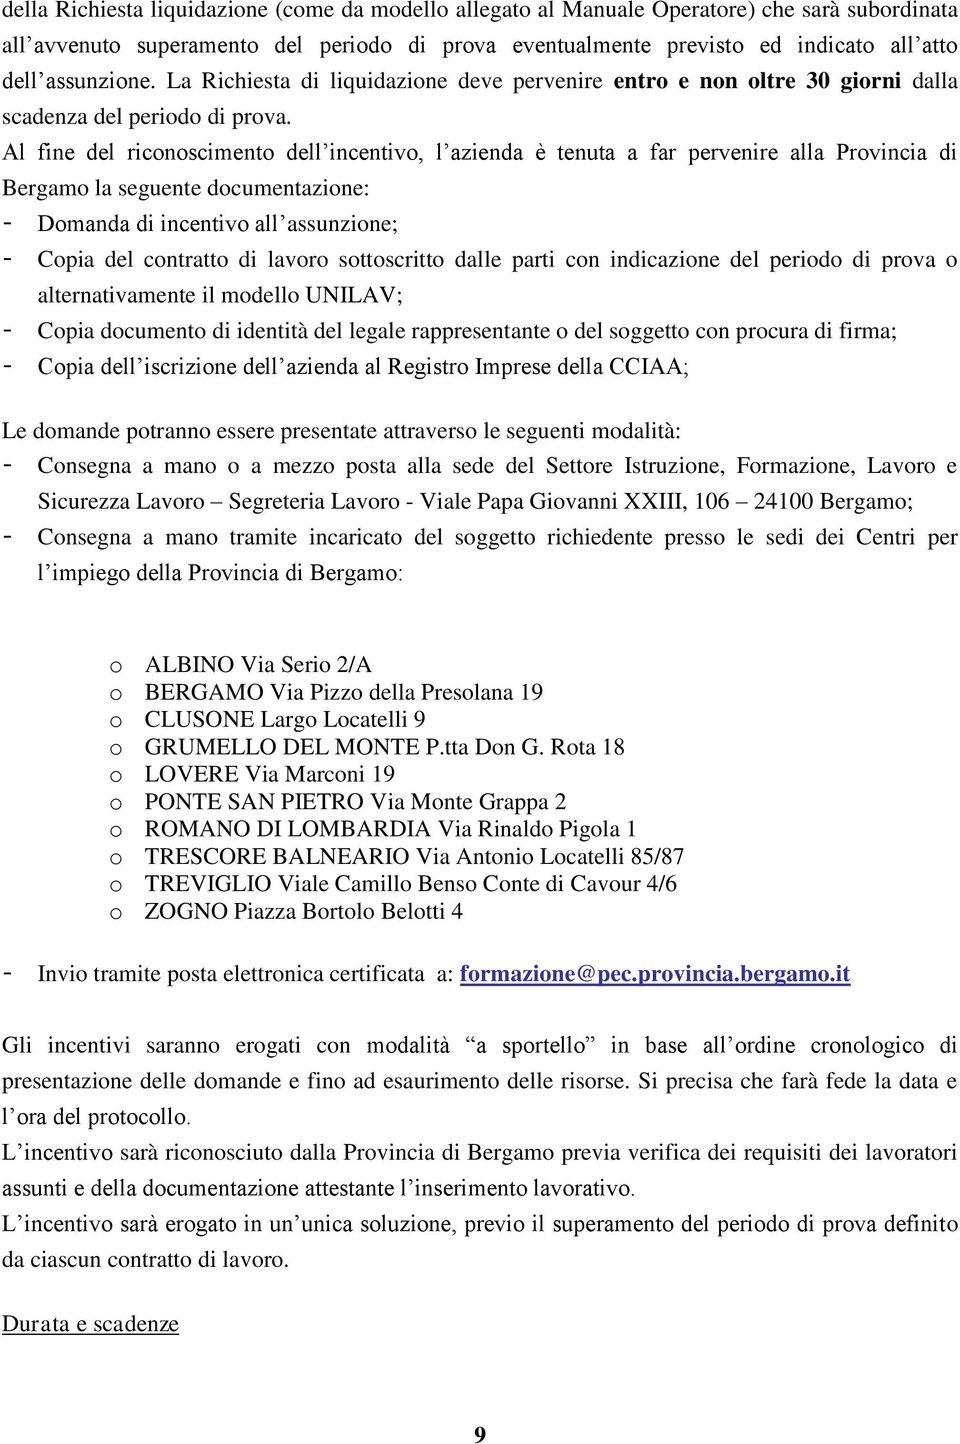 Al fine del riconoscimento dell incentivo, l azienda è tenuta a far pervenire alla Provincia di Bergamo la seguente documentazione: - Domanda di incentivo all assunzione; - Copia del contratto di